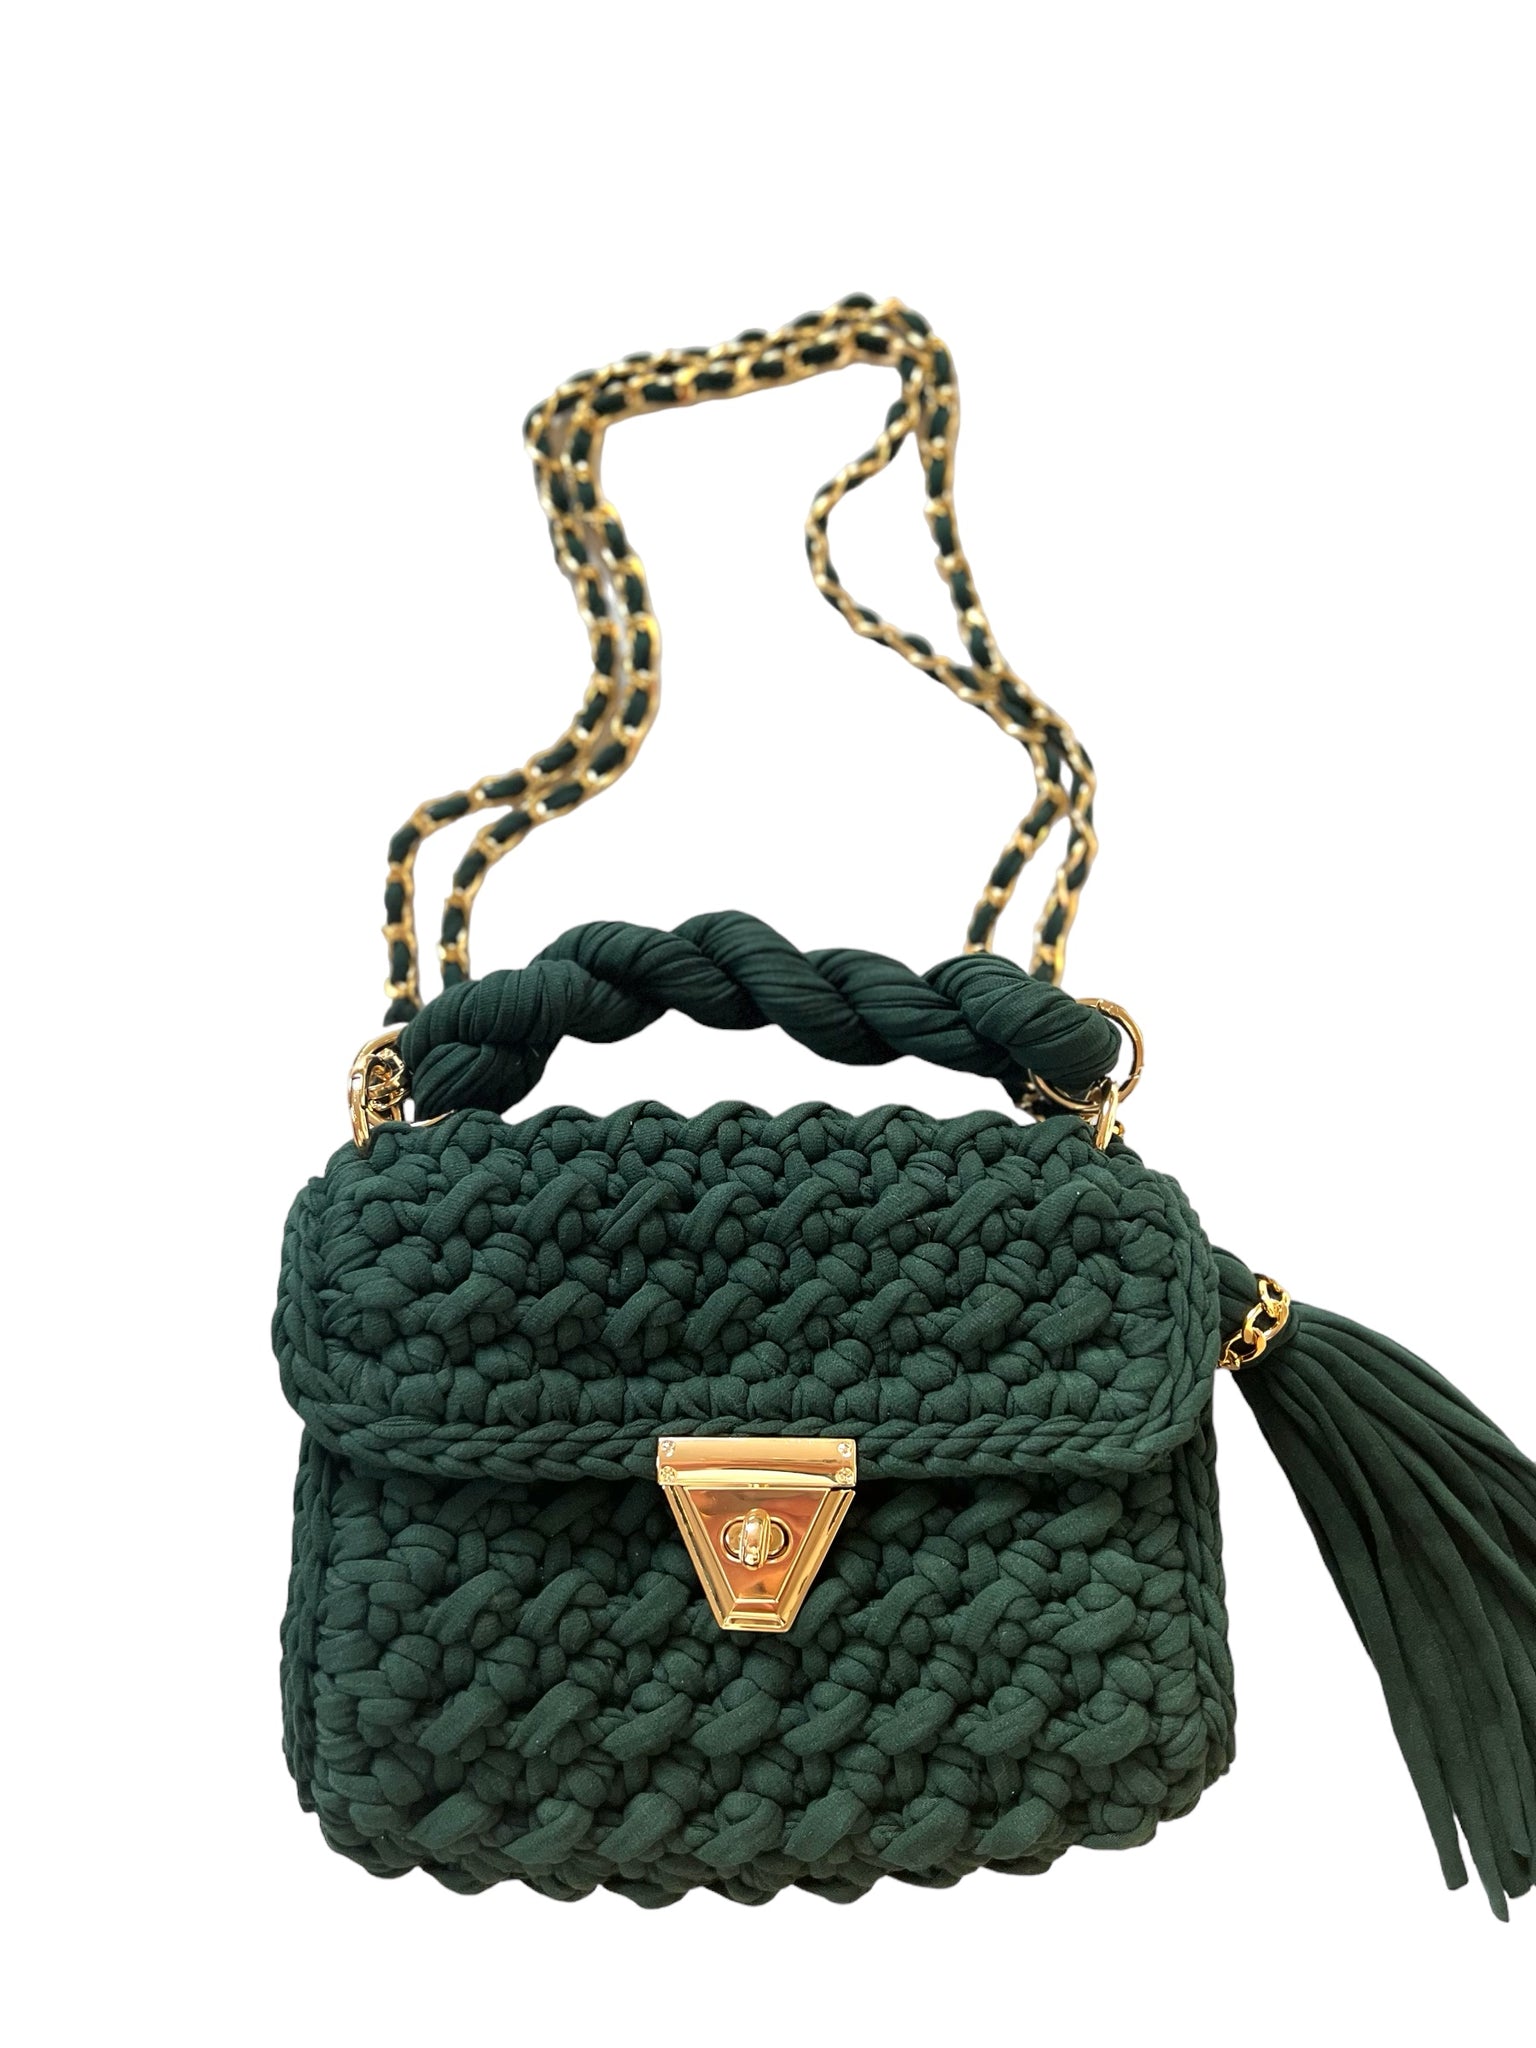 Utgående modell Archiella Knitted Handbag Emerald